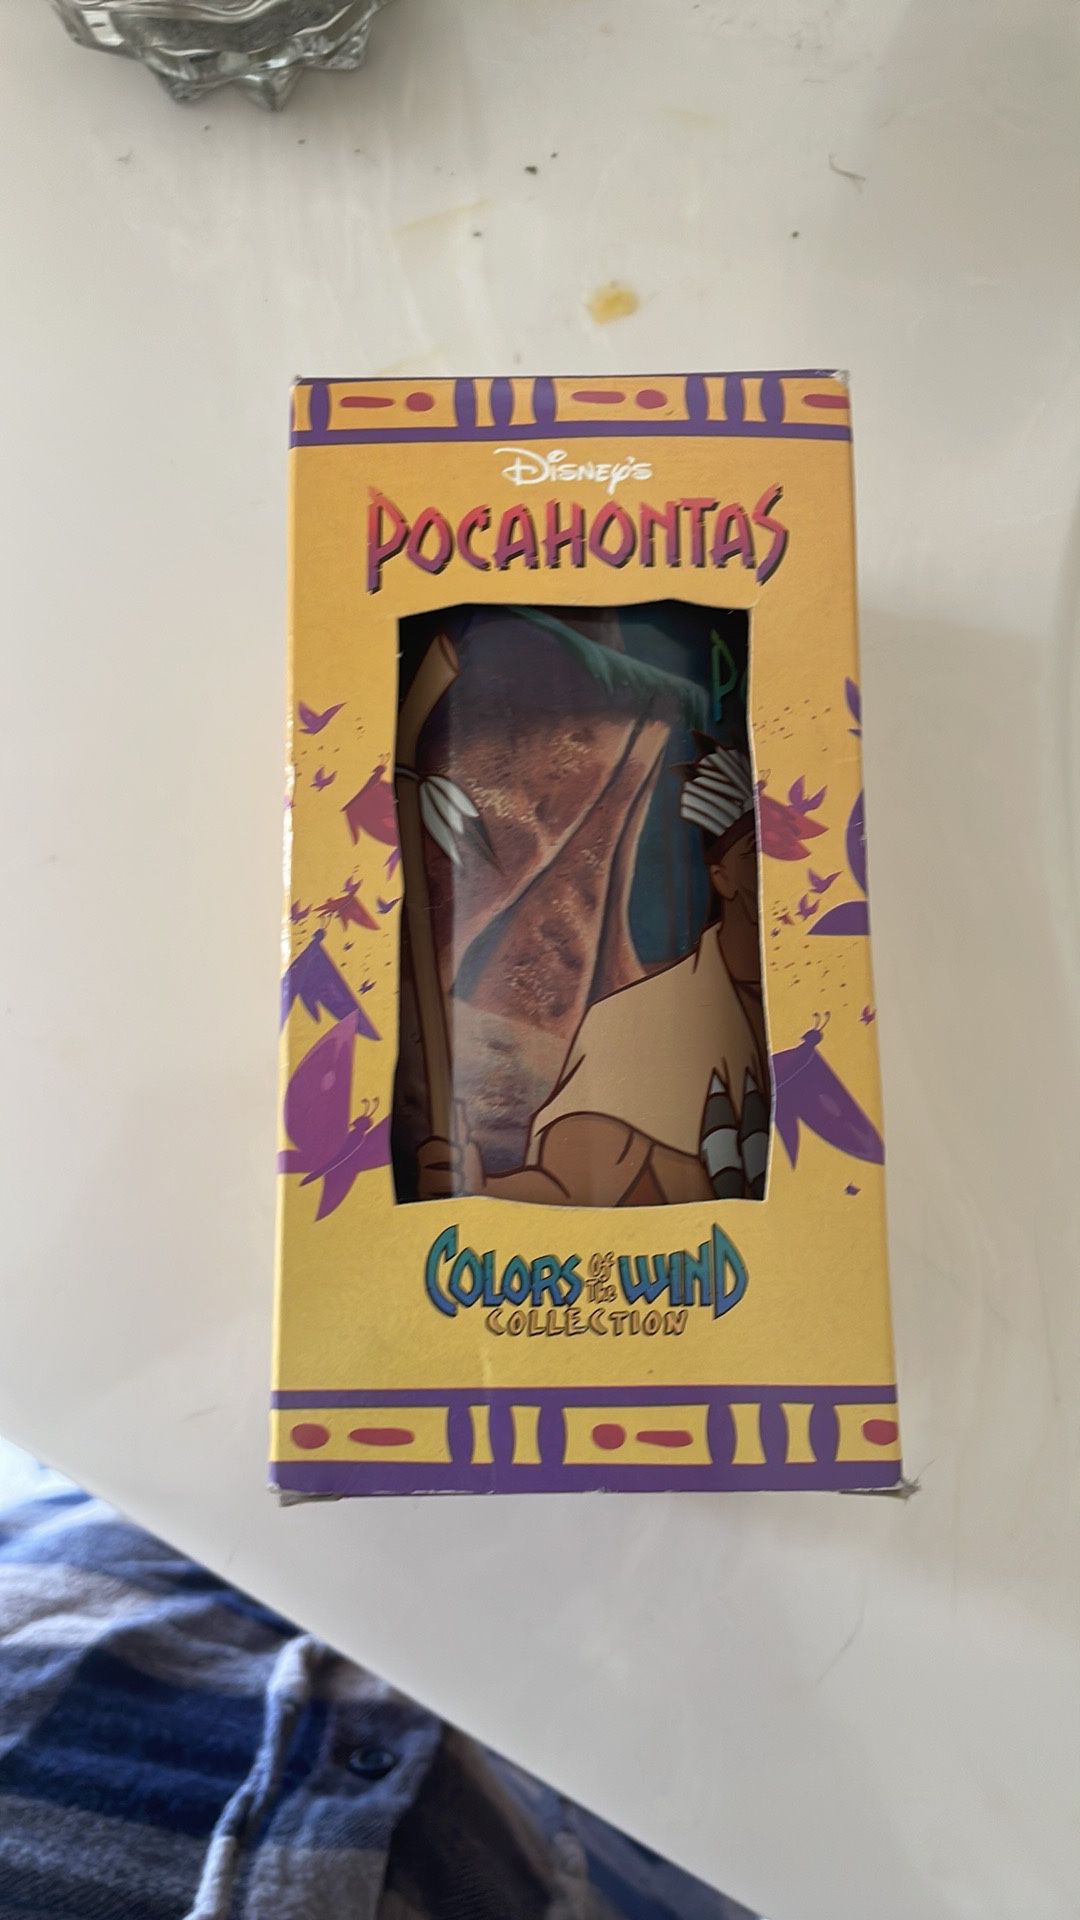 Disney Pocahontas Burger King (NWT Collectible Cup